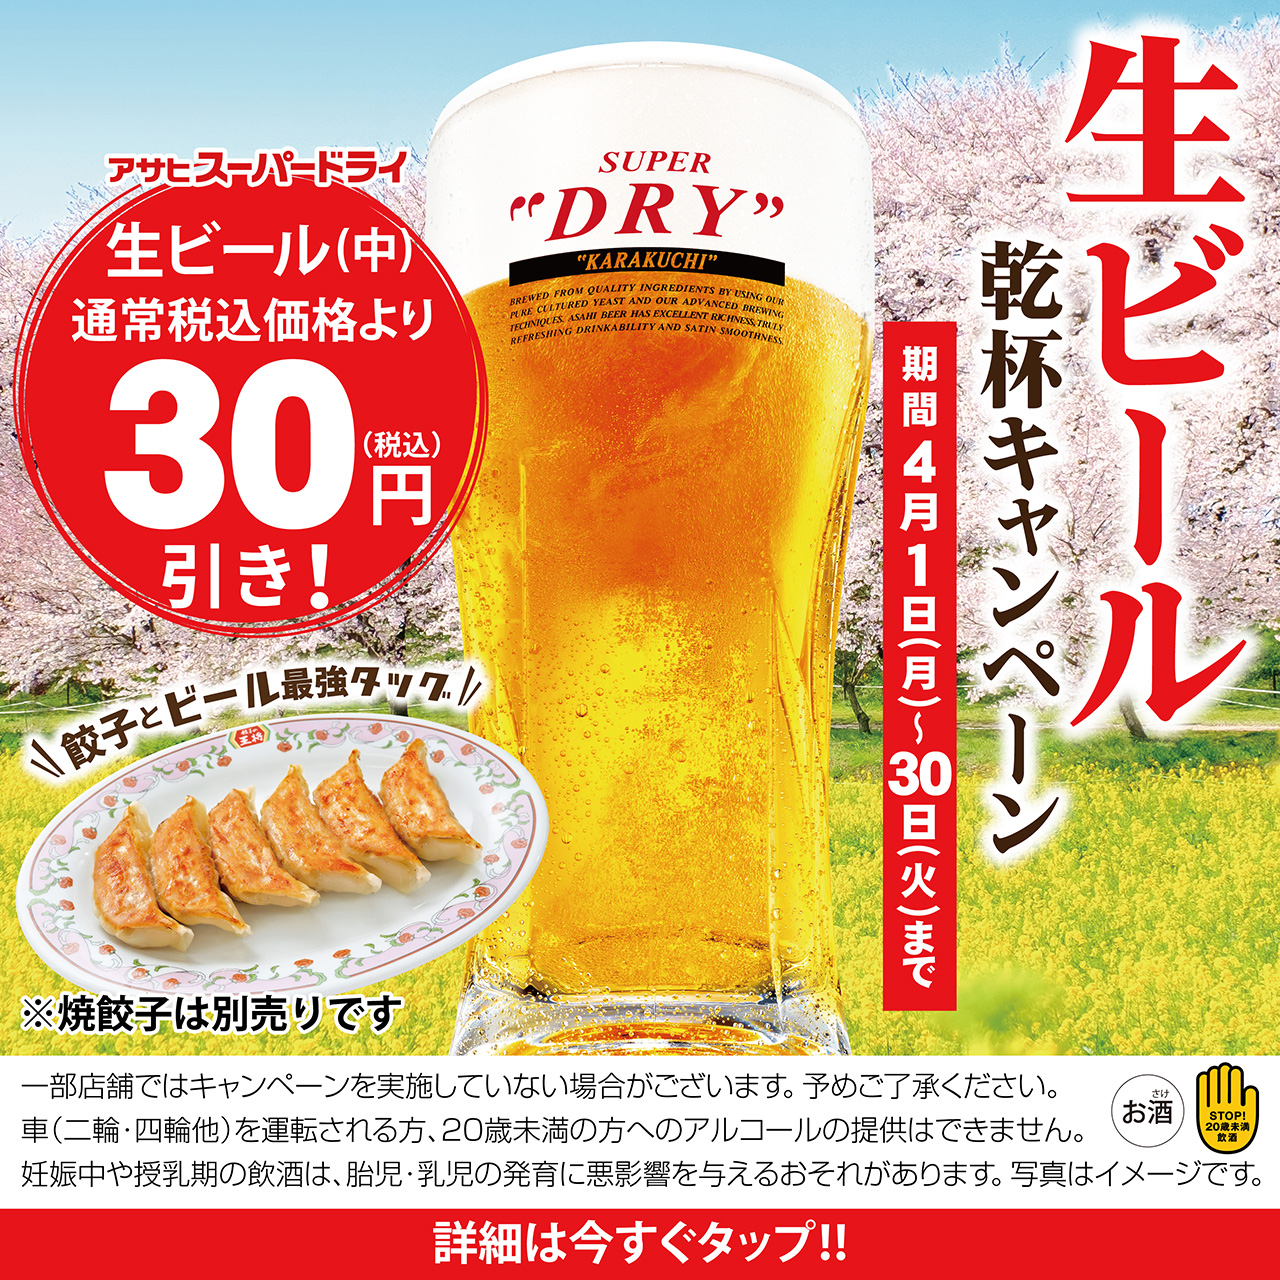 【4月1日〜4月30日】生ビール乾杯キャンペーン開催!!